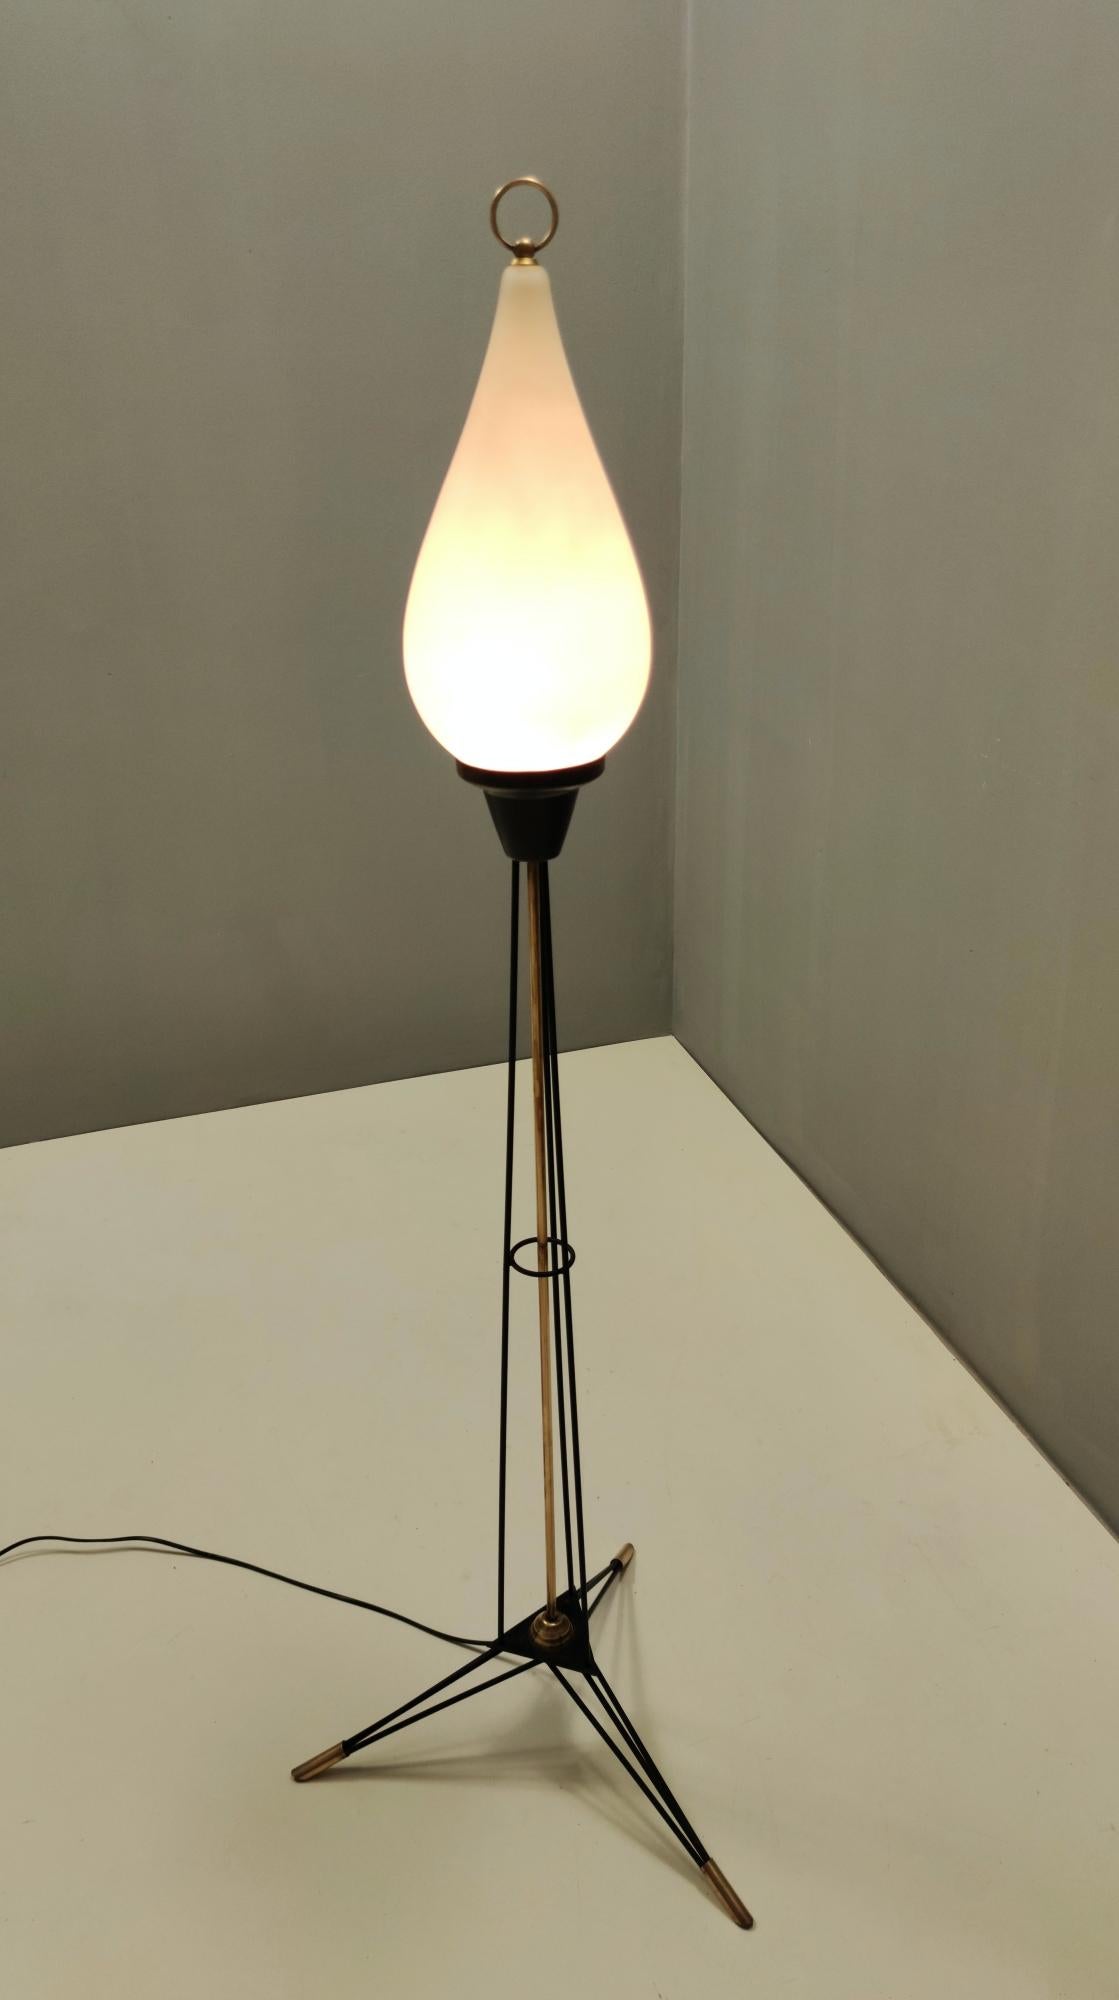 Fabriqué en Italie, années 1950.
Voici un magnifique lampadaire Stilnovo sur pieds tripodes en laiton, métal verni noir et verre opalin.
Il porte l'étiquette d'origine de Stilnovo.
Ce lampadaire a été récemment recâblé.
Il s'agit d'une pièce